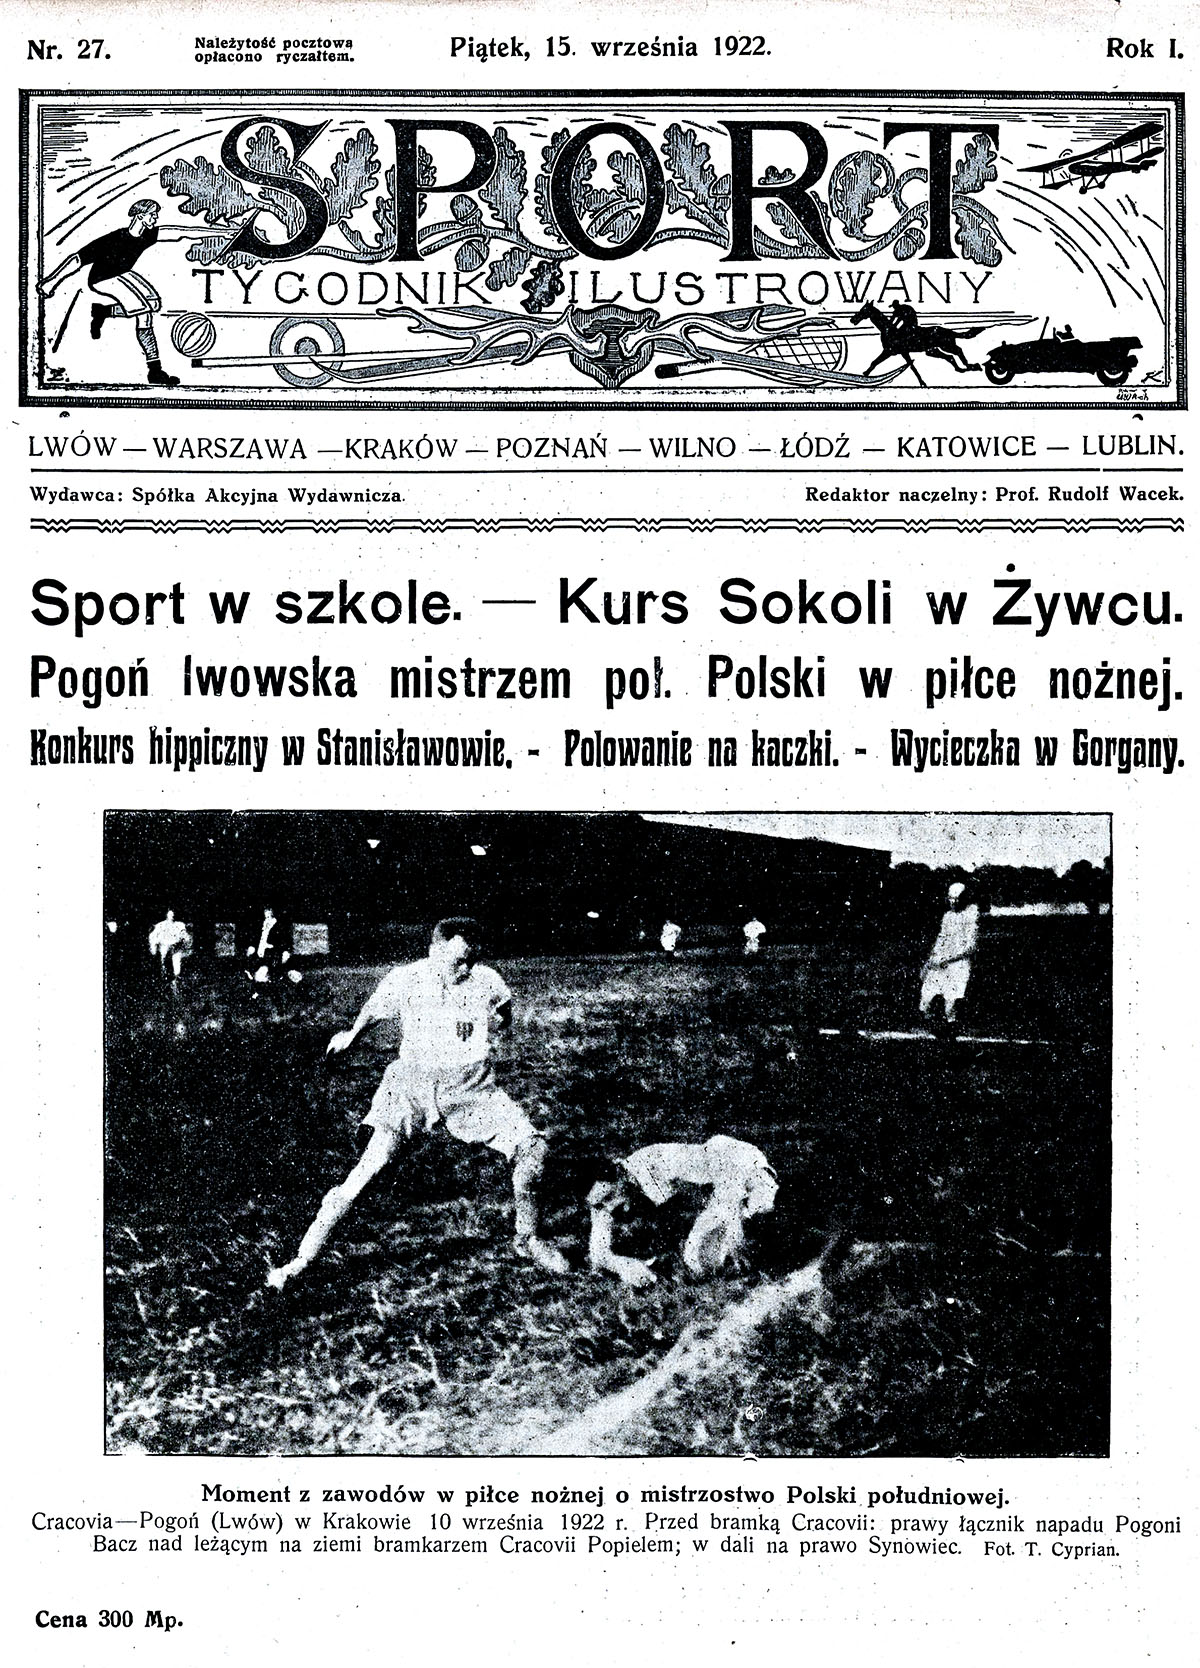 Okładka pisma „Sport”, którego redaktorem naczelnym był Rudolf Wacek. Źródło: Jagiellońska Biblioteka Cyfrowa